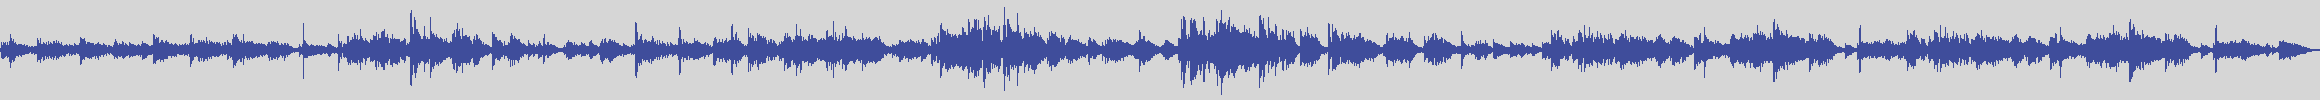 digiphonic_records [DPR013] Little Tony - Come Un Anno Fa [Original Mix] audio wave form